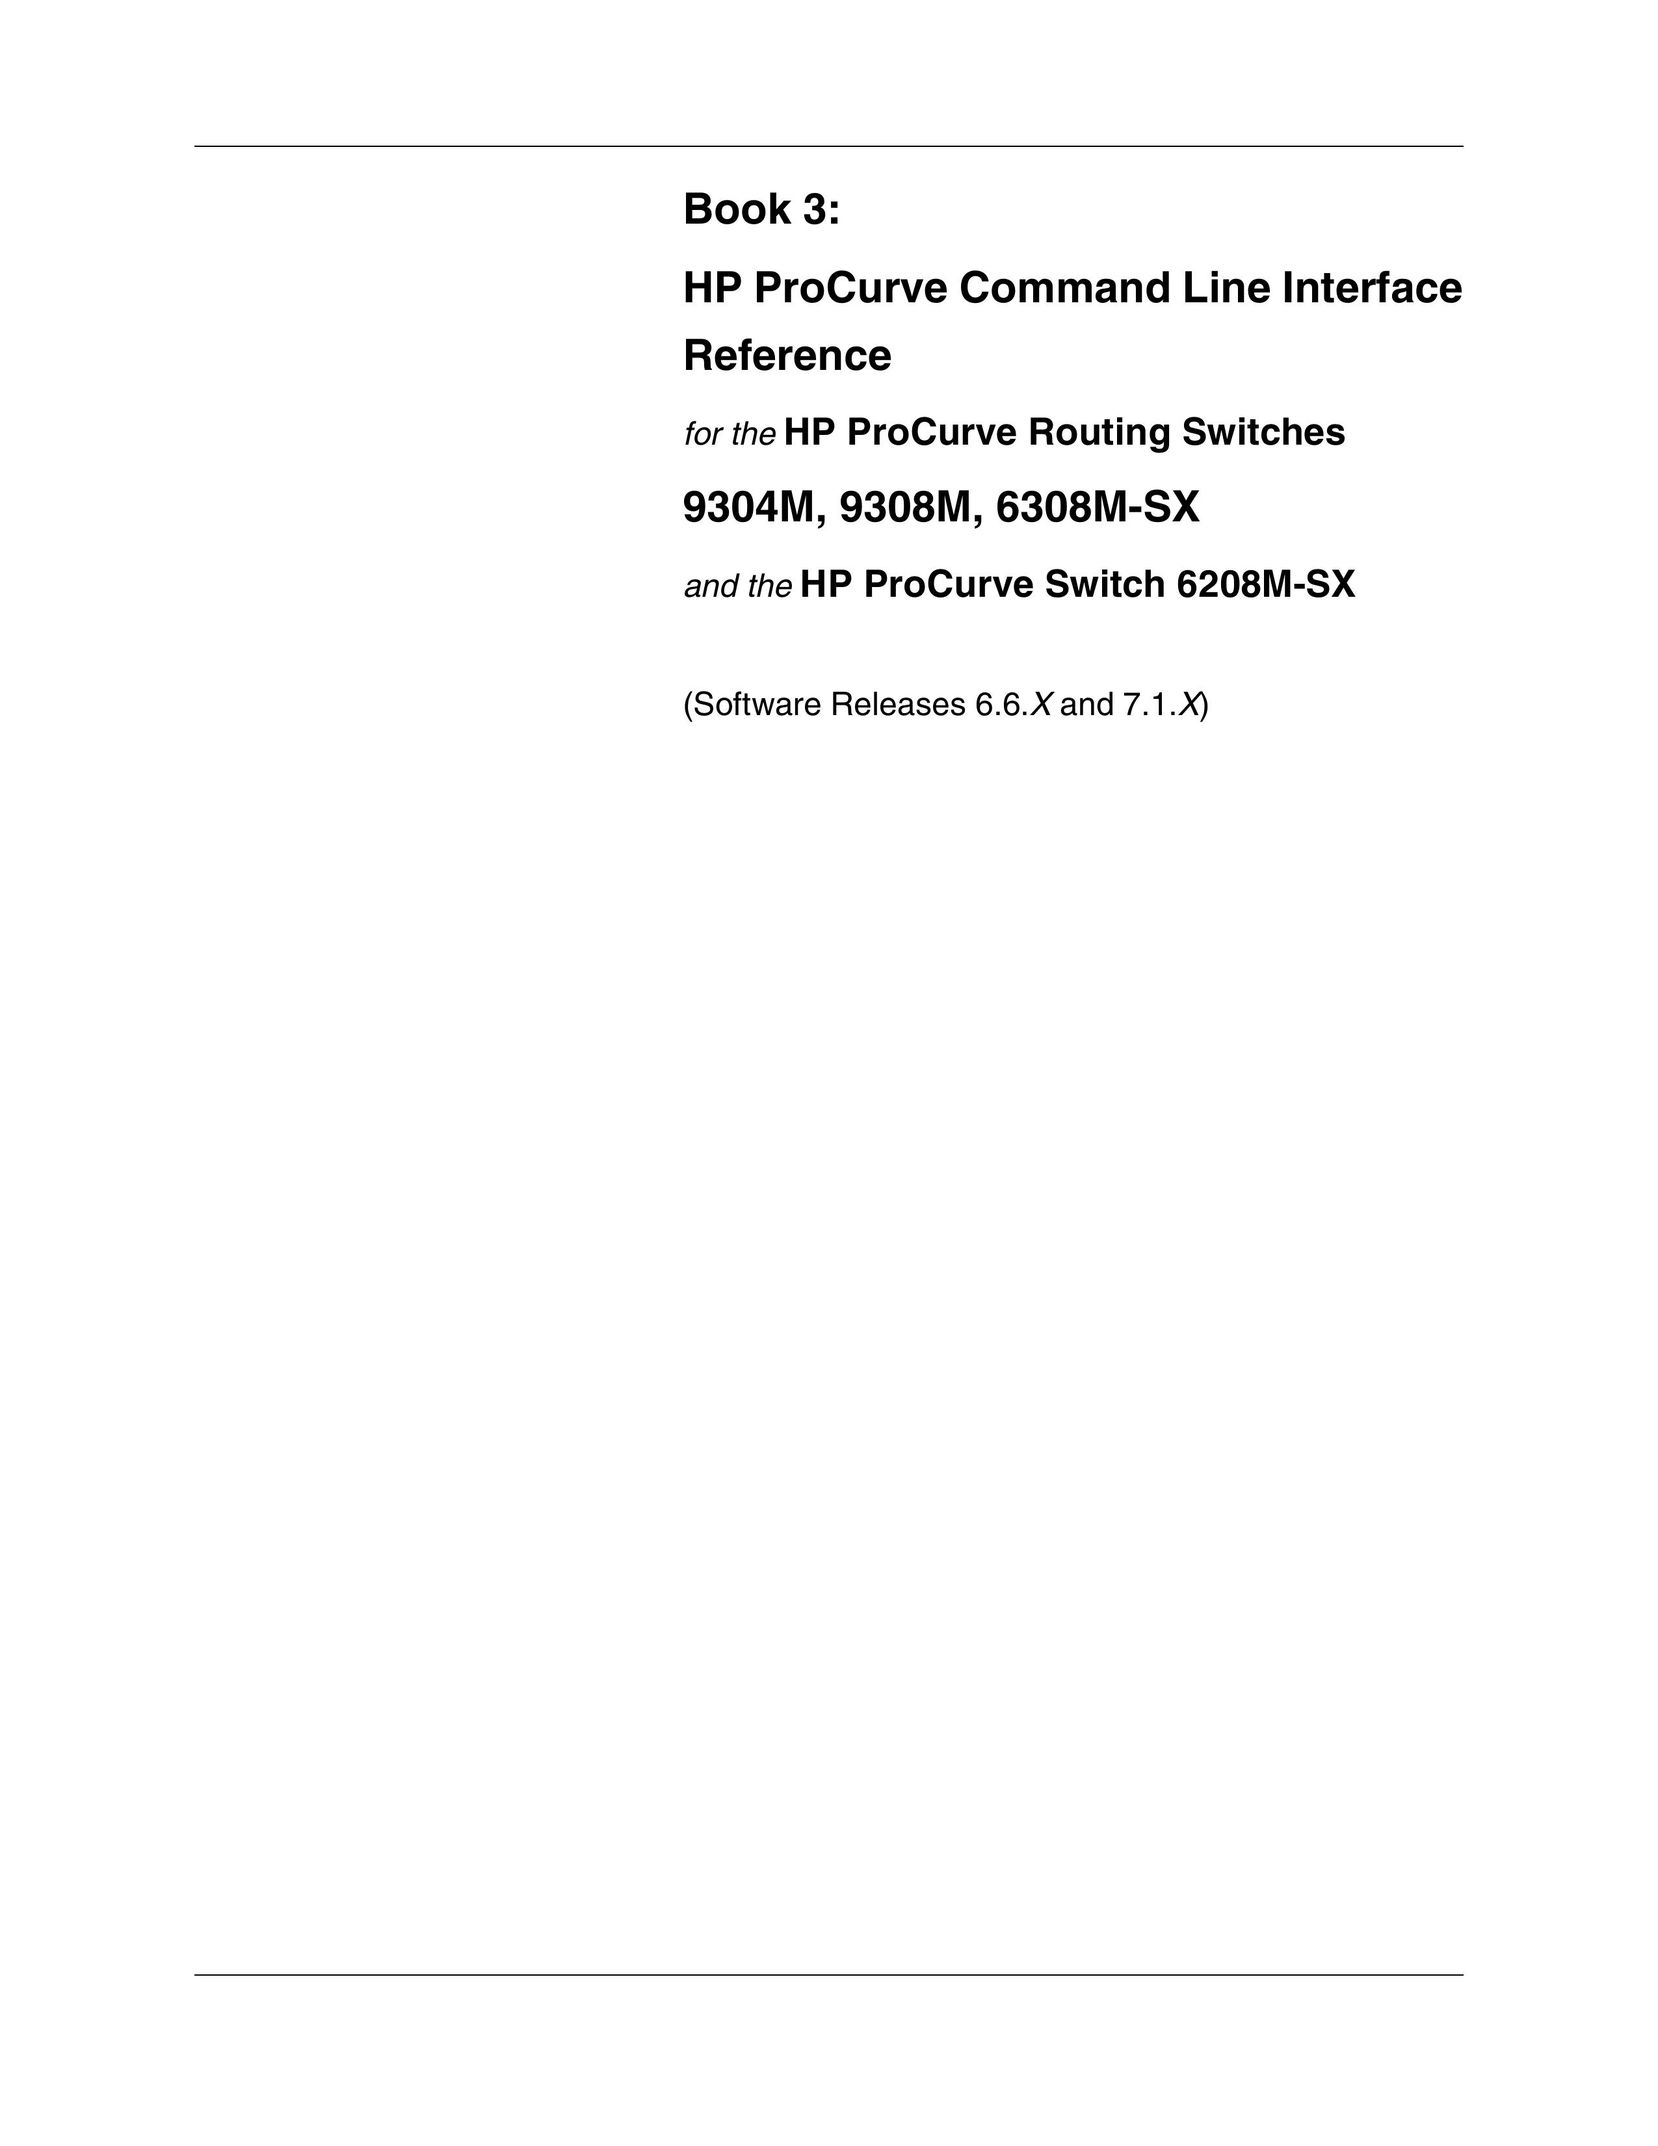 HP (Hewlett-Packard) 9304M Network Router User Manual